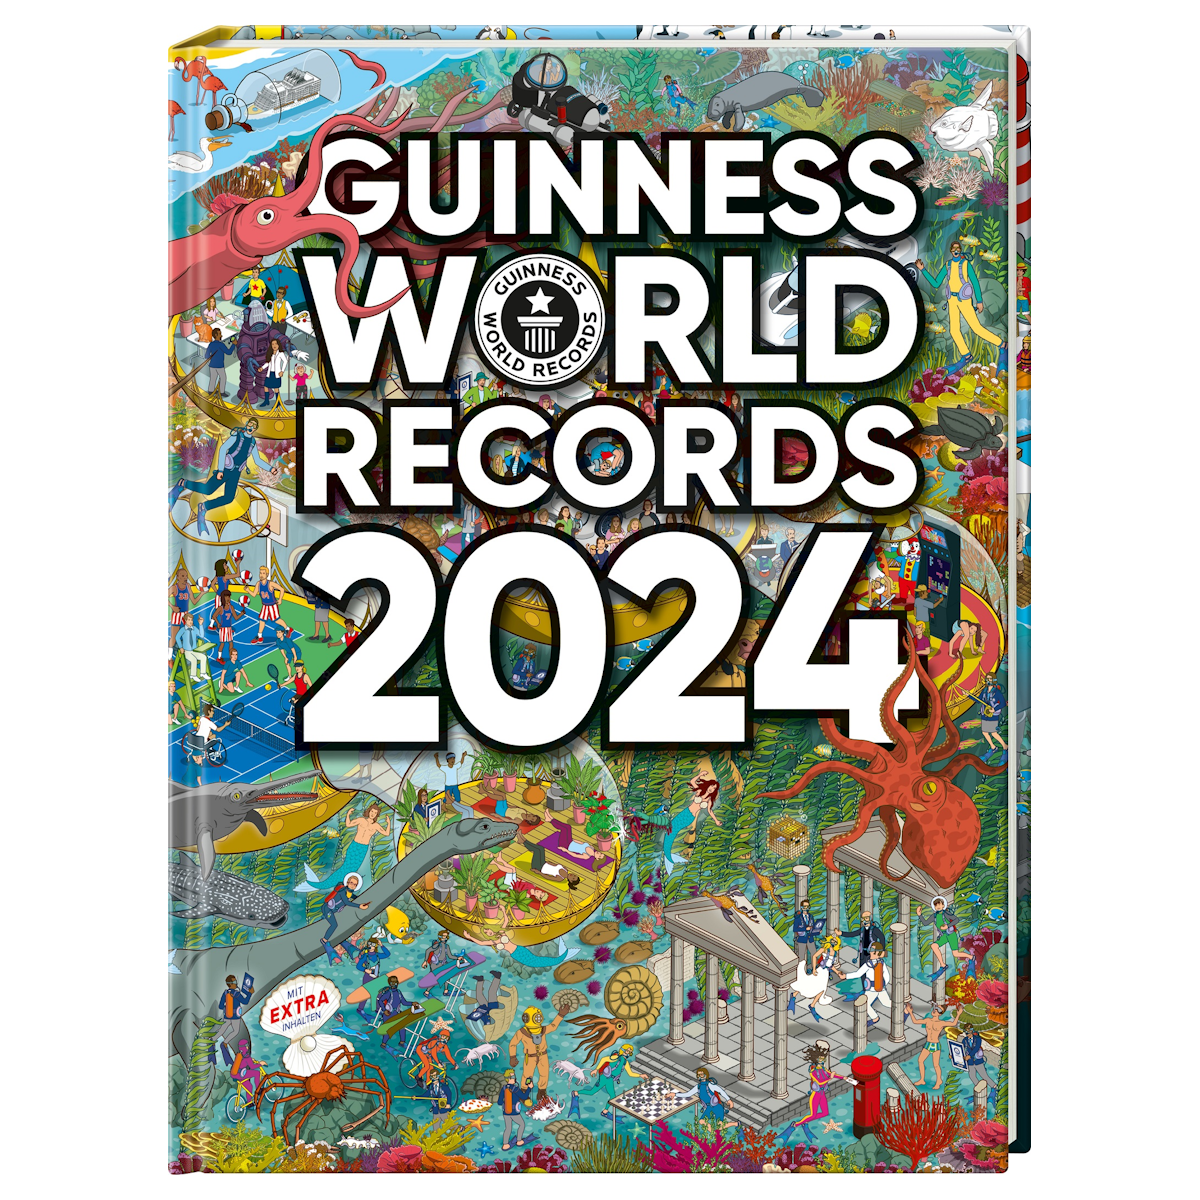 Guinness World Records Day: Das war los am heutigen Jahrestag der Rekorde